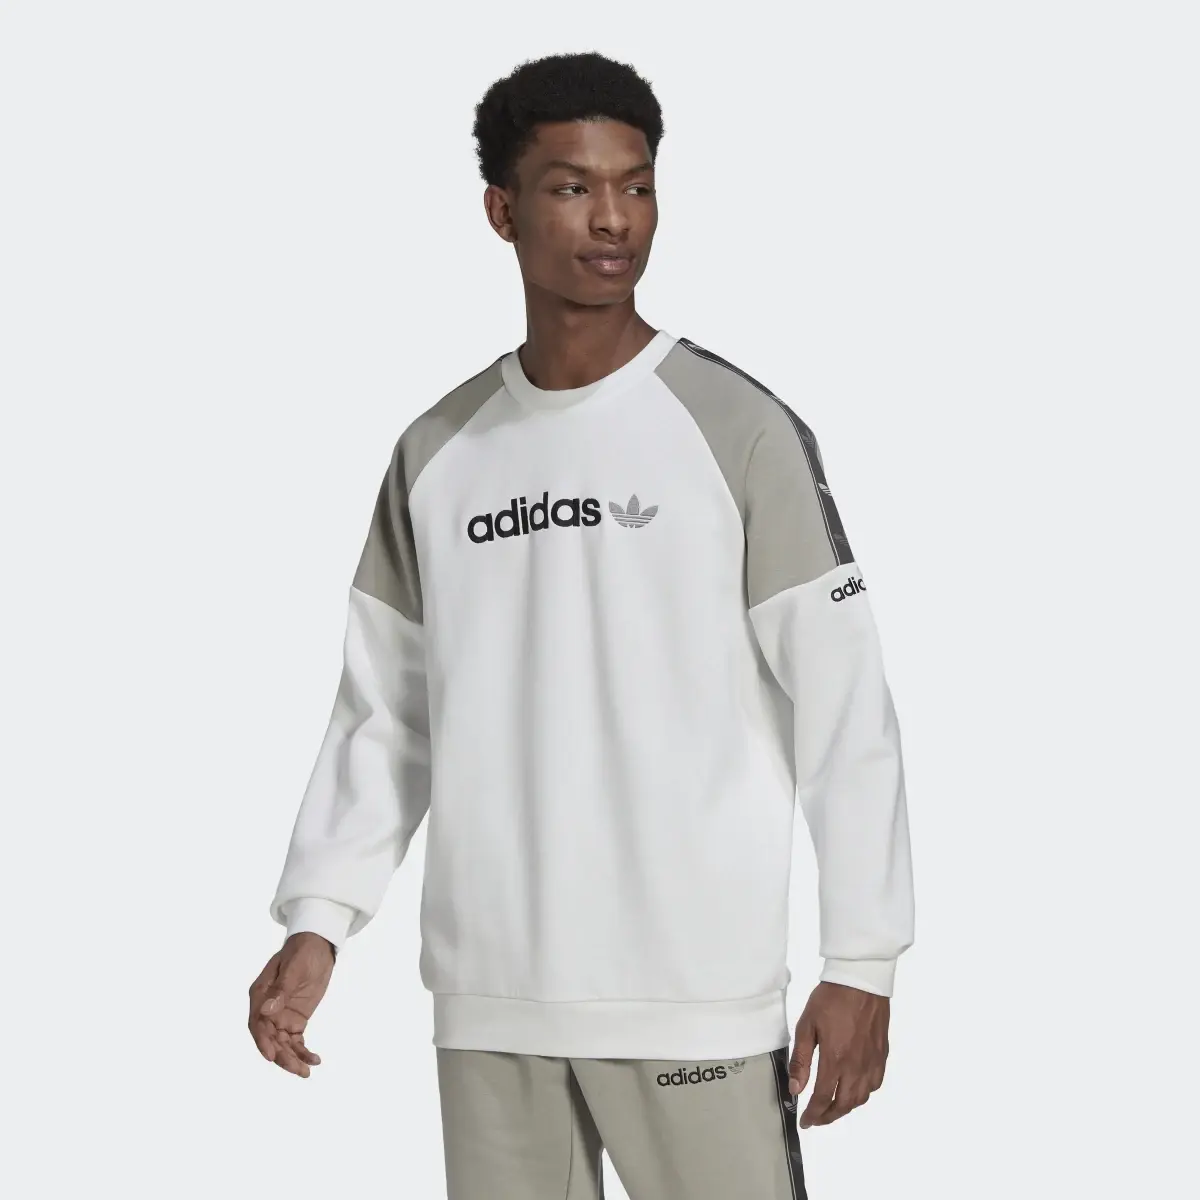 Adidas Tape Fleece Crew Sweatshirt. 2